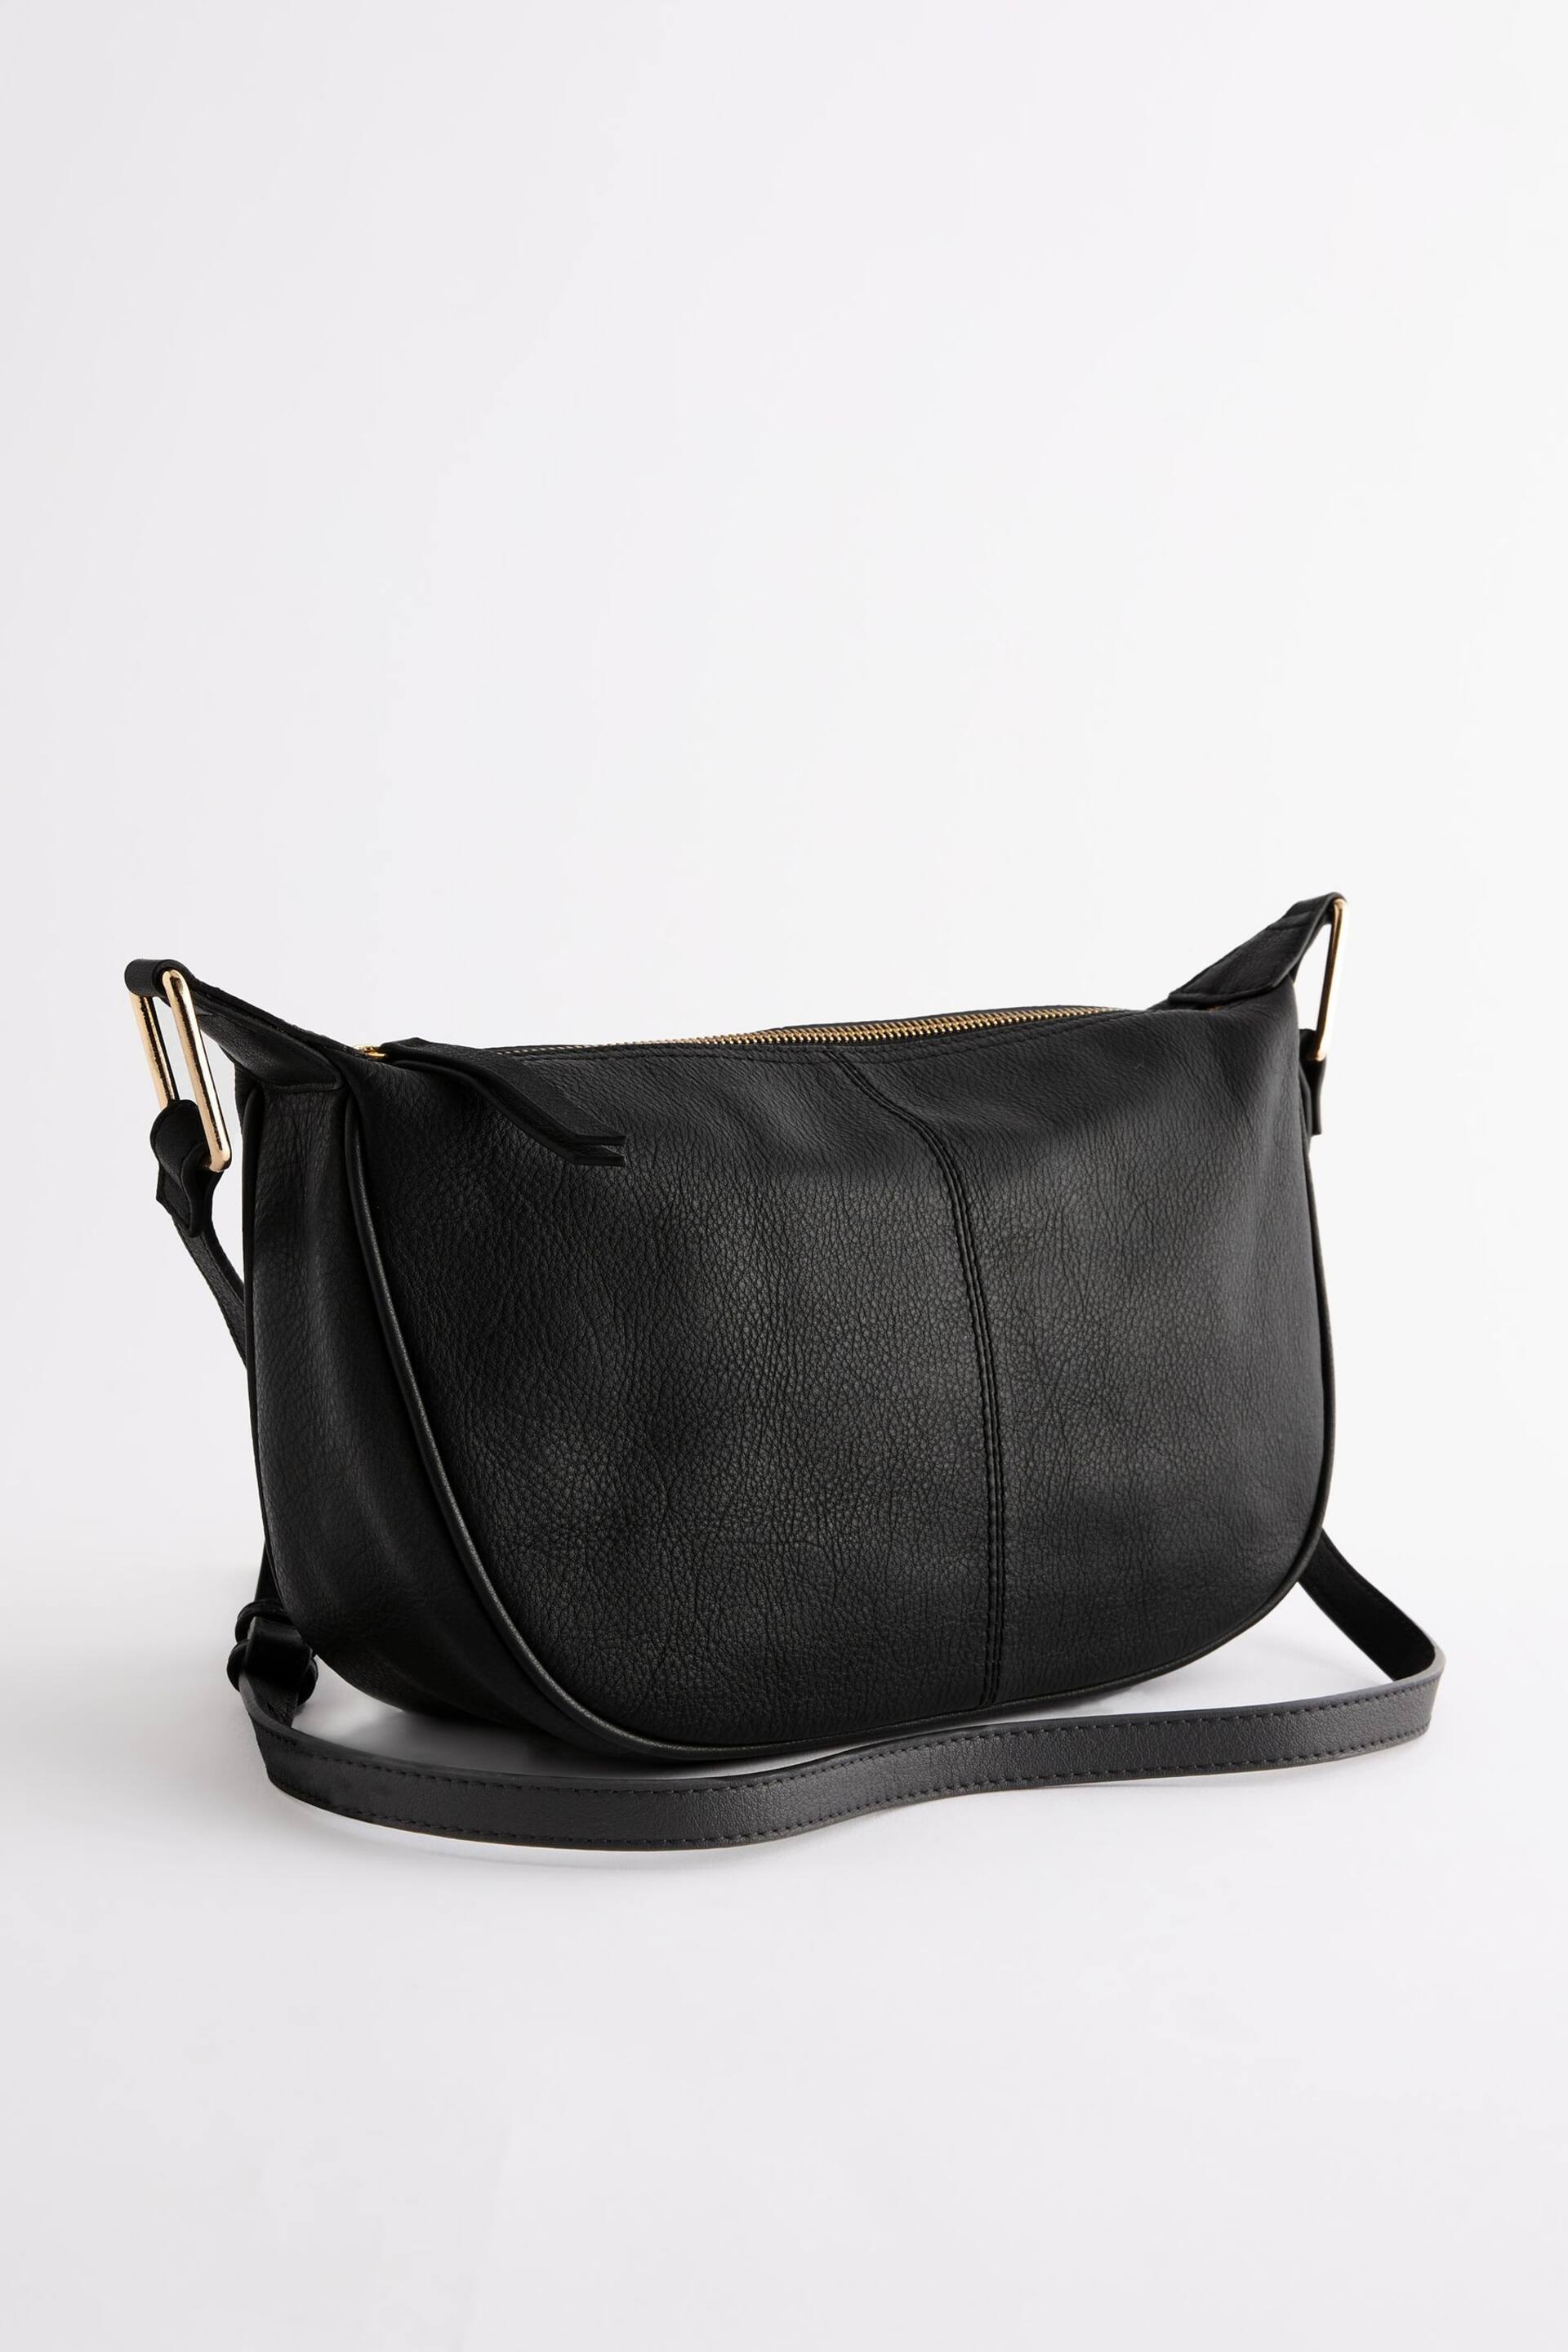 Black Leather Sling Bag - Image 6 of 10